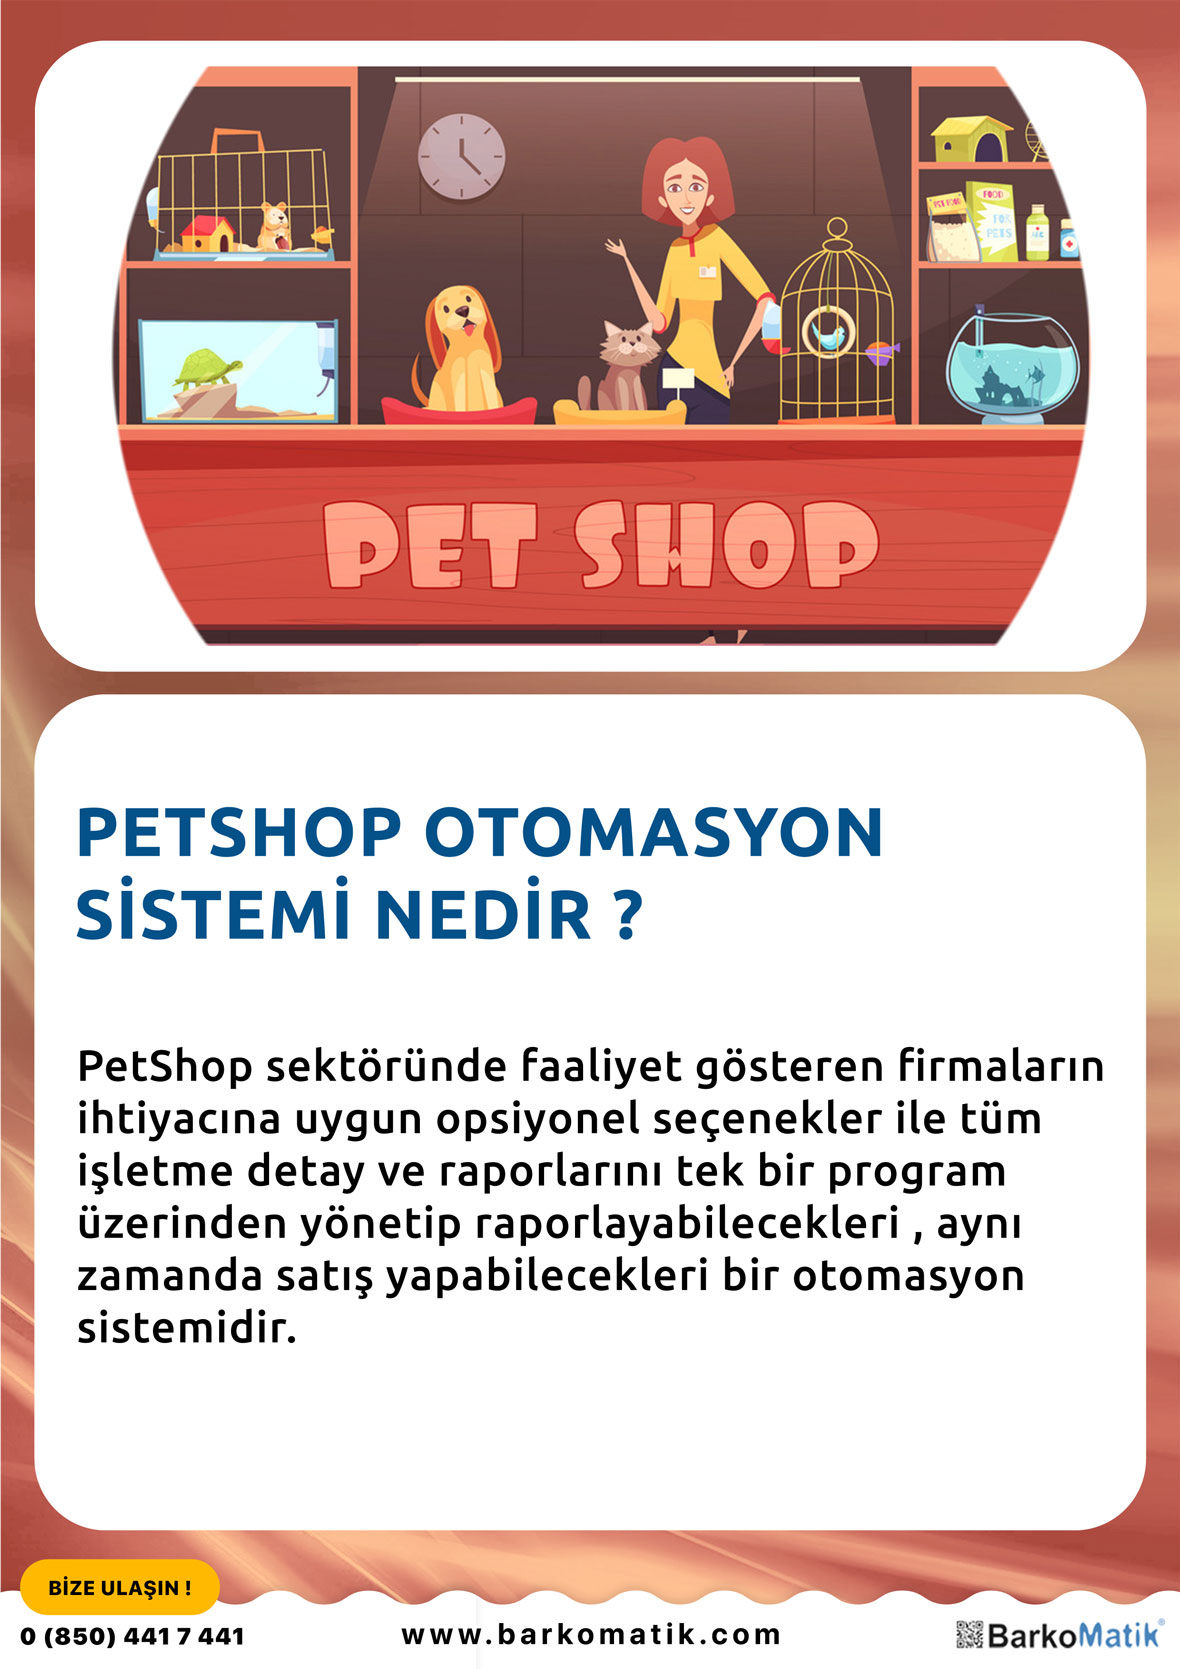 Petshop Otomasyon SİSTEMİ